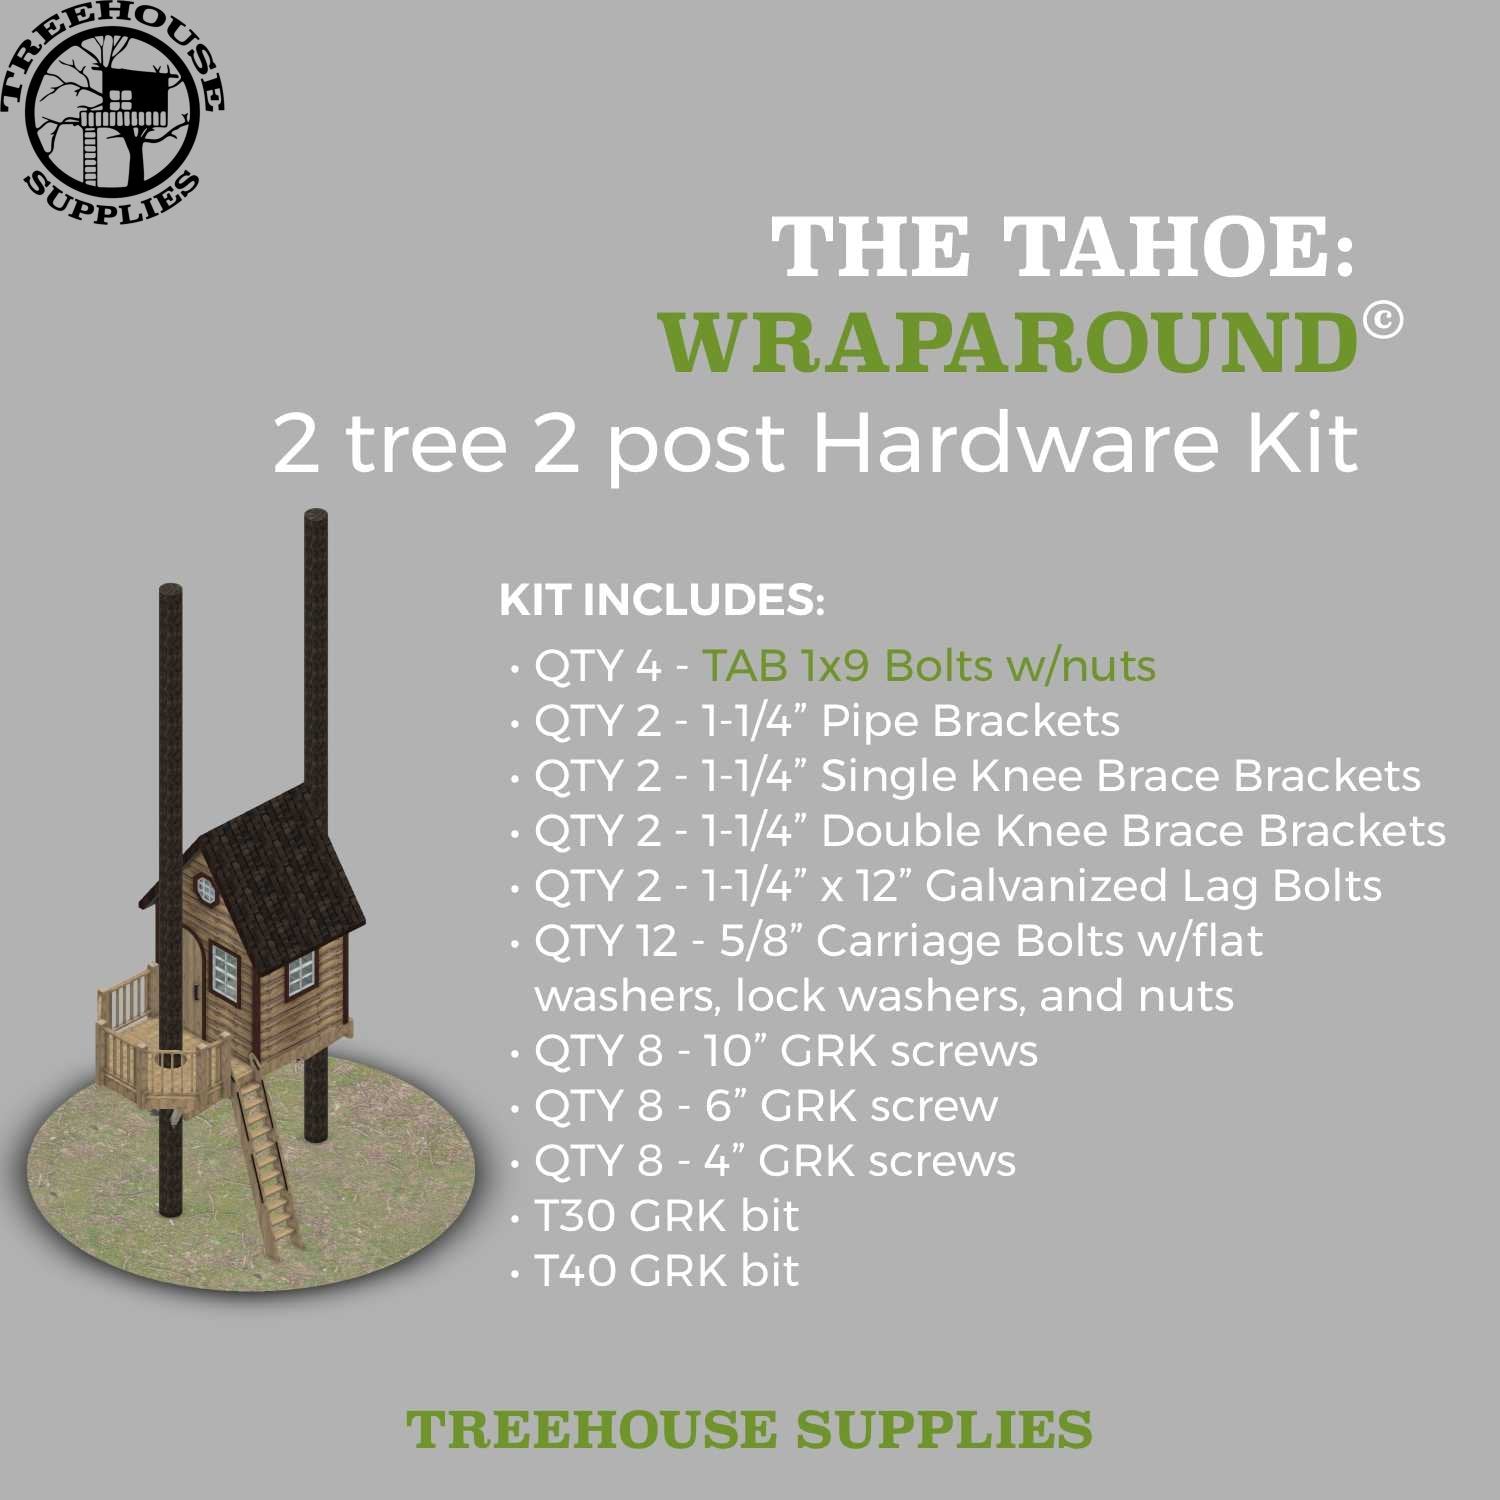 Treehouse Supplies THE TAHOE: WRAPAROUND © Rectangular Treehouse Hardware Kit 